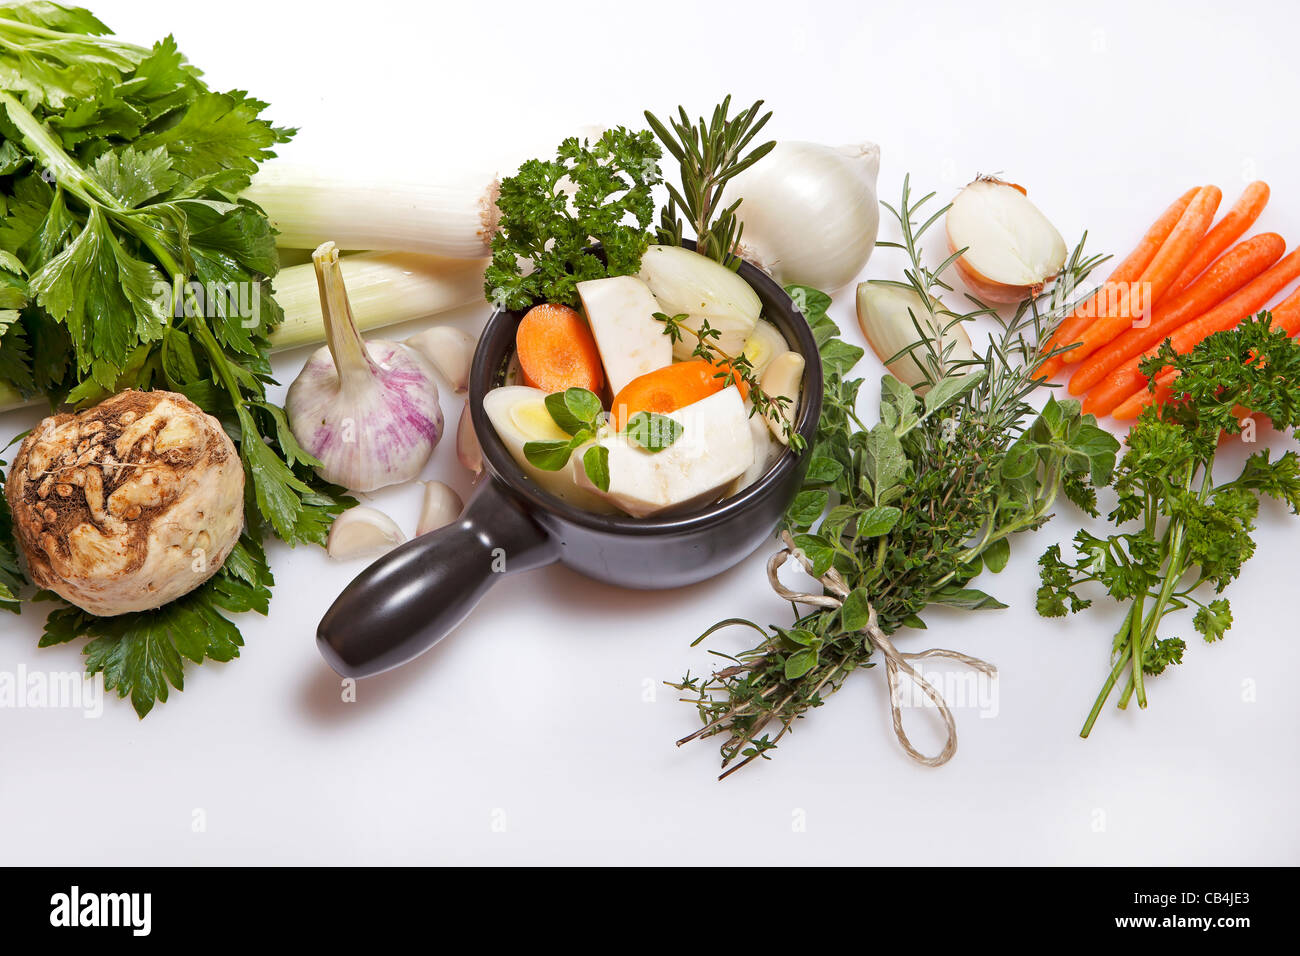 La preparazione e gli ingredienti per un fresco di brodo vegetale Foto Stock